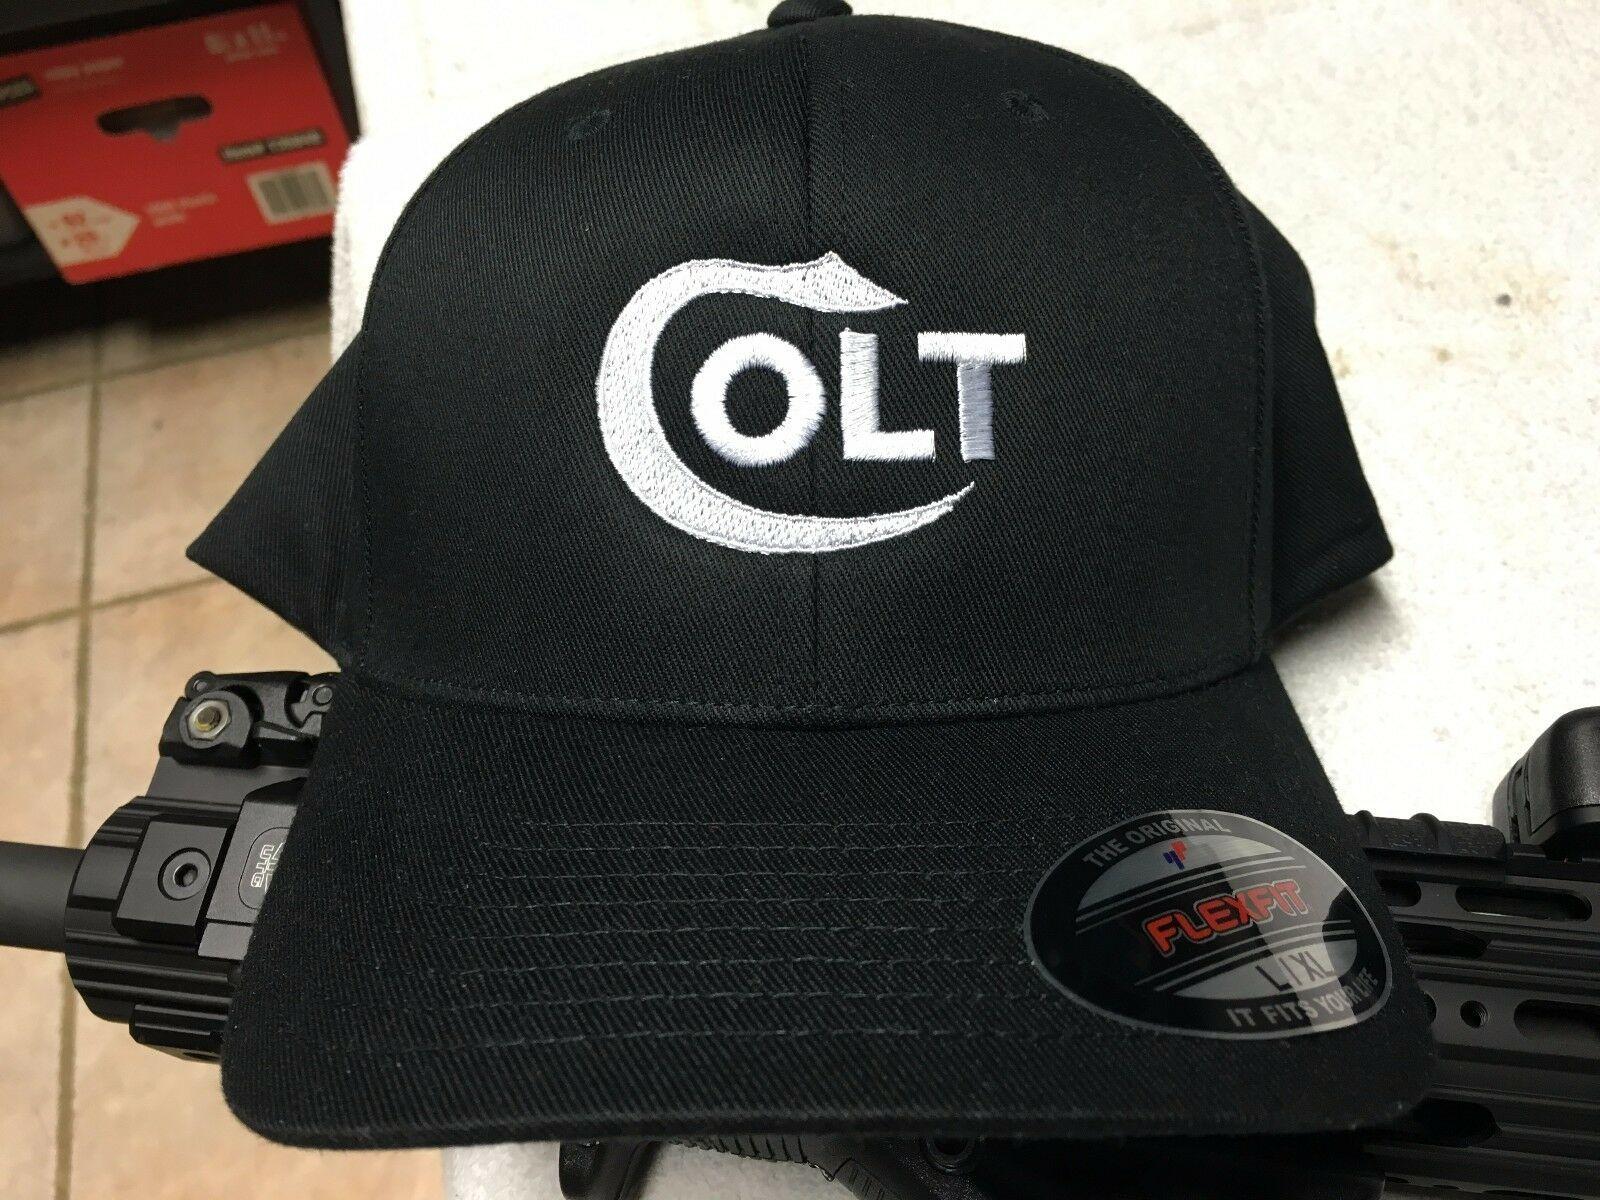 Blue Olive Logo - Colt Logo Embroidered Flexfit Ball Cap Hat Black Blue Olive Green or